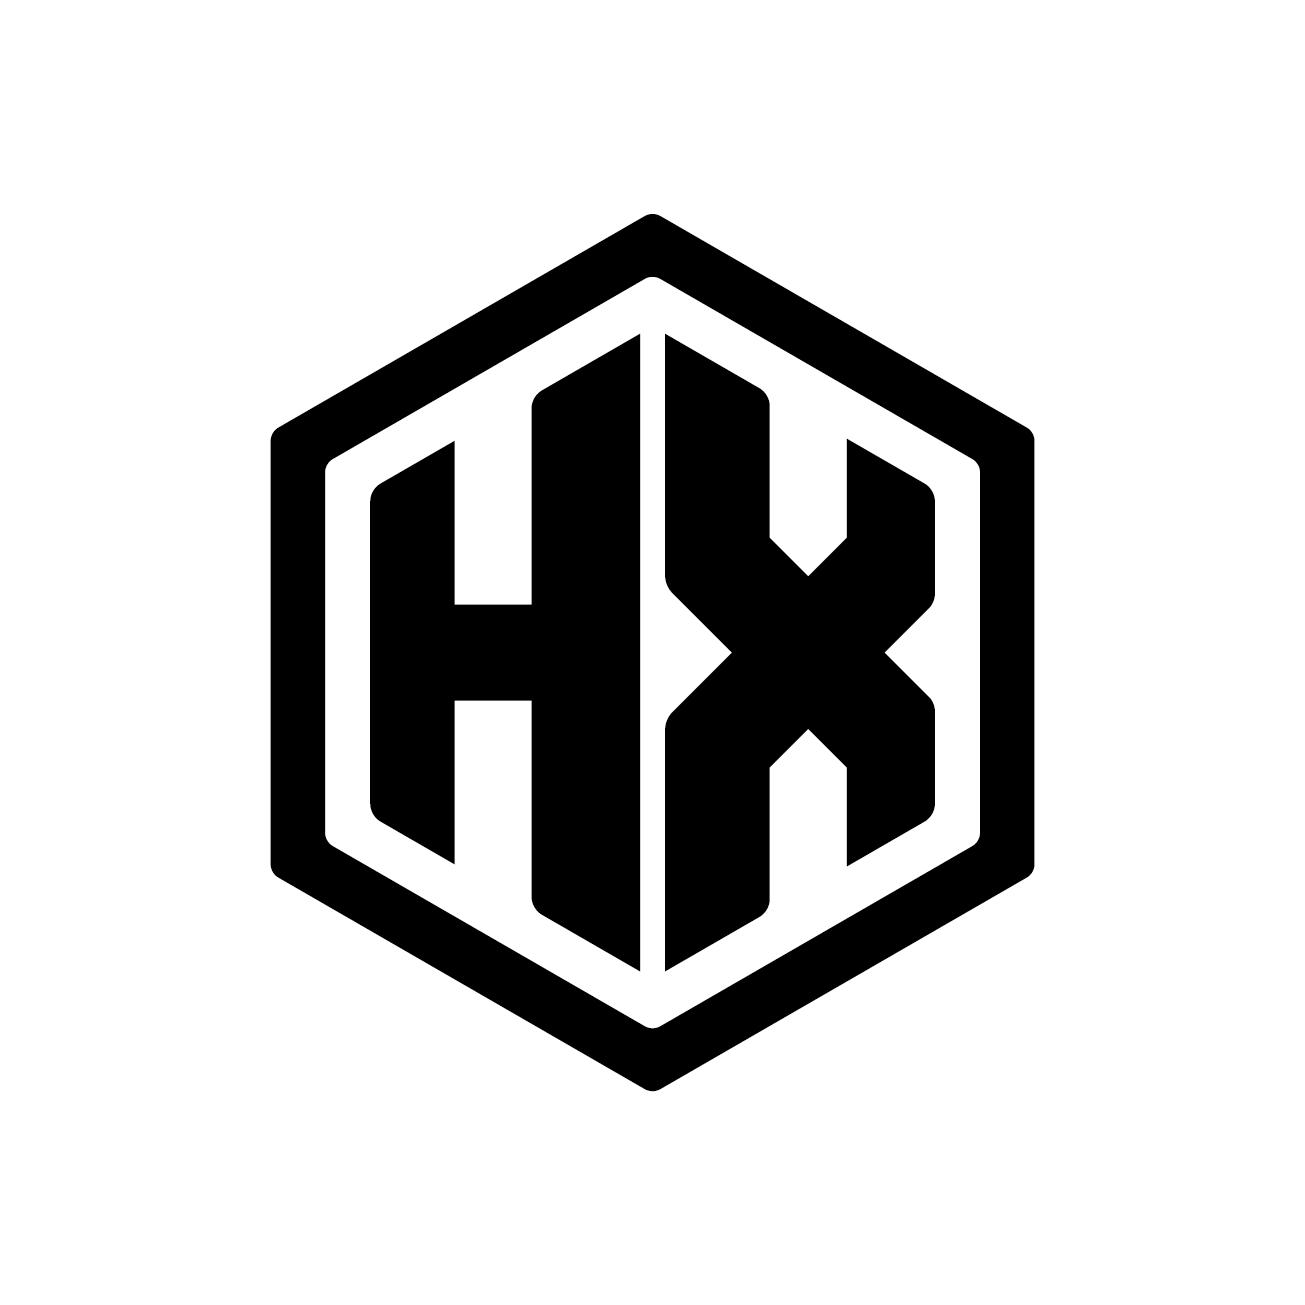 hx商标设计图片